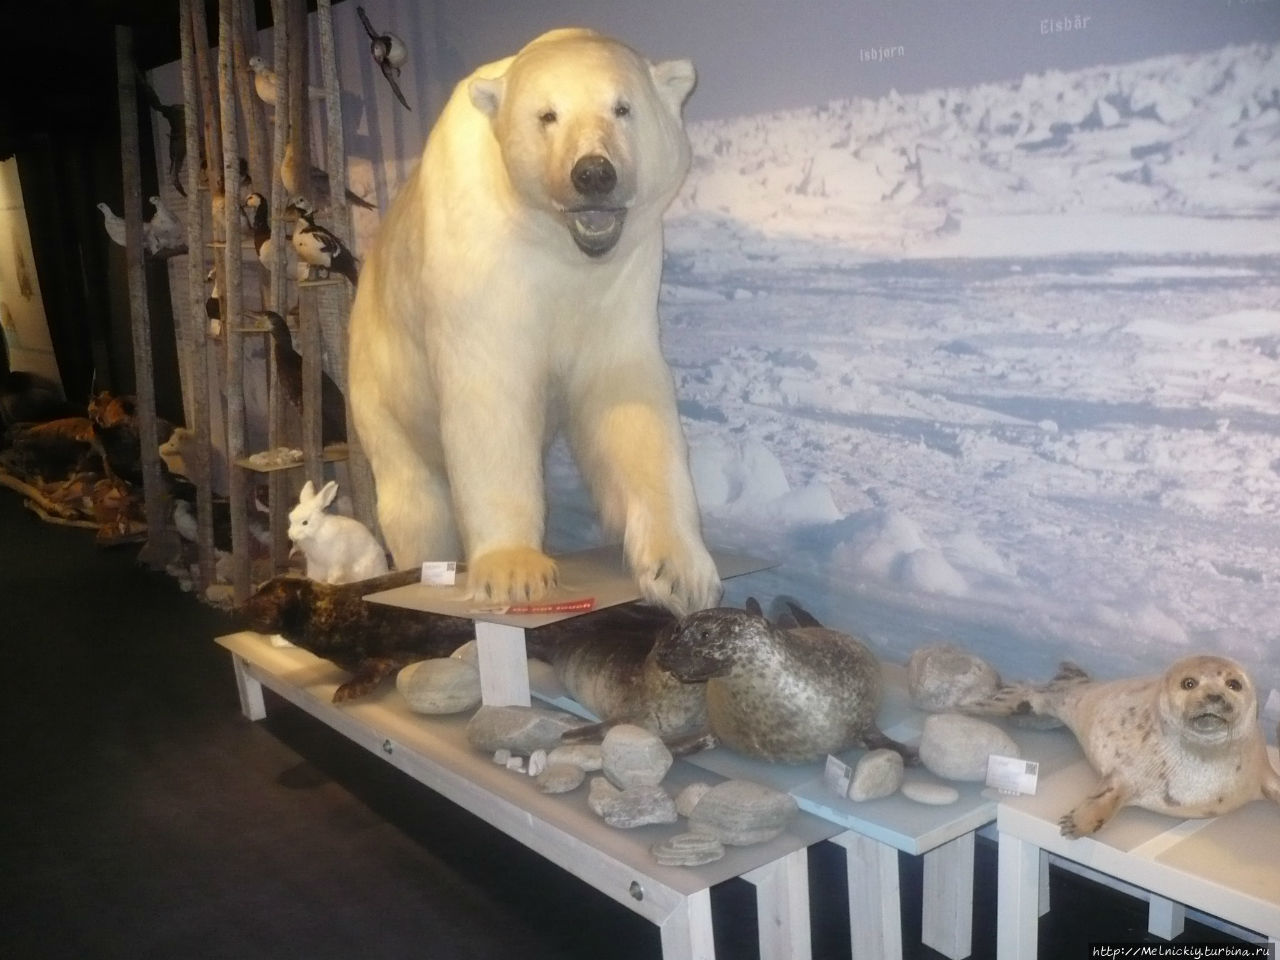 “Королевский клуб белого медведя” Хаммерфест, Норвегия